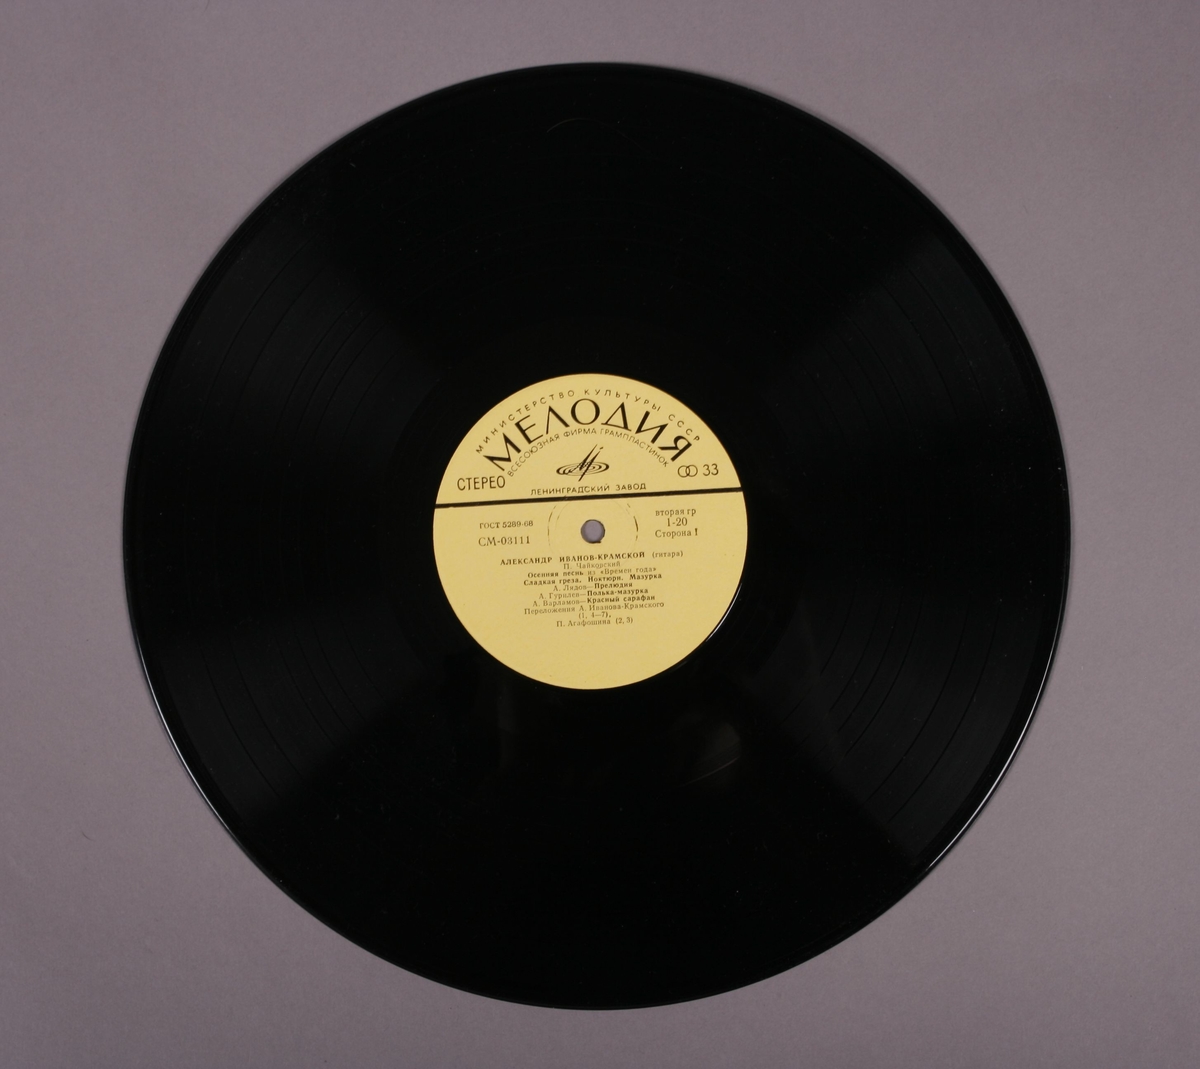 Grammofonplate i svart vinyl og plateomslag i papp. På baksiden av plateomslag er det skrevet en hilsen til tidligere eier. Plata ligger i en papirlomme.